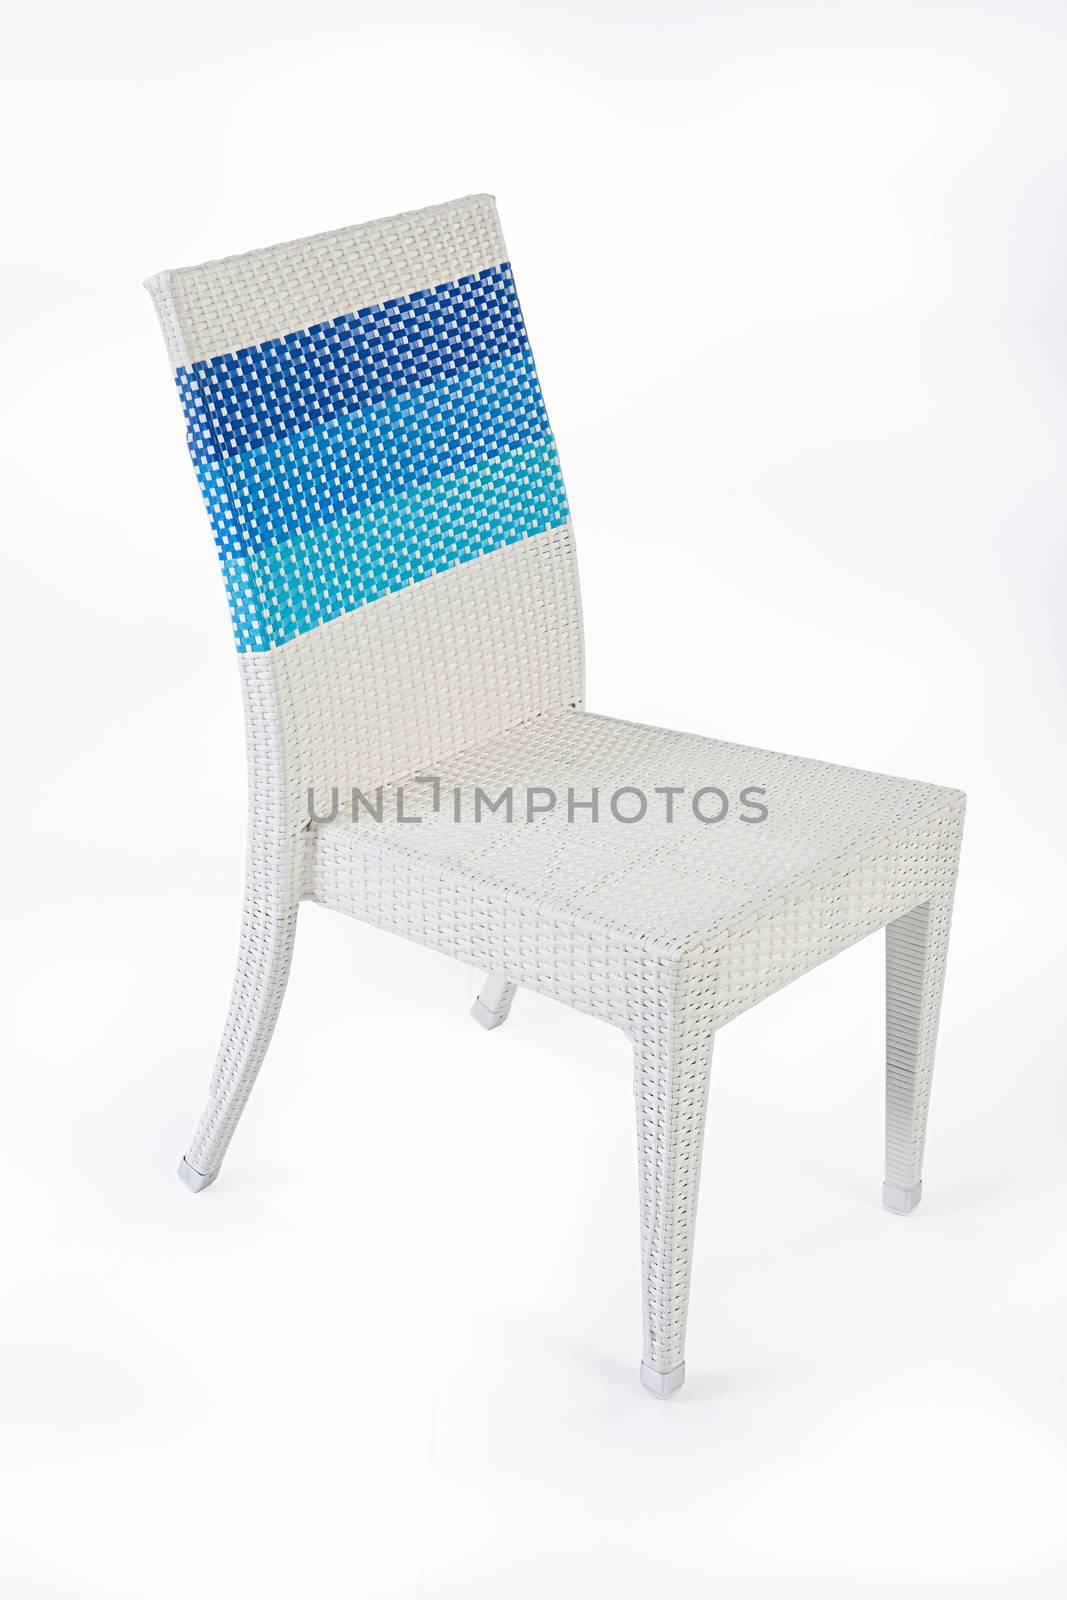 Wicker Chair by Fotoskat